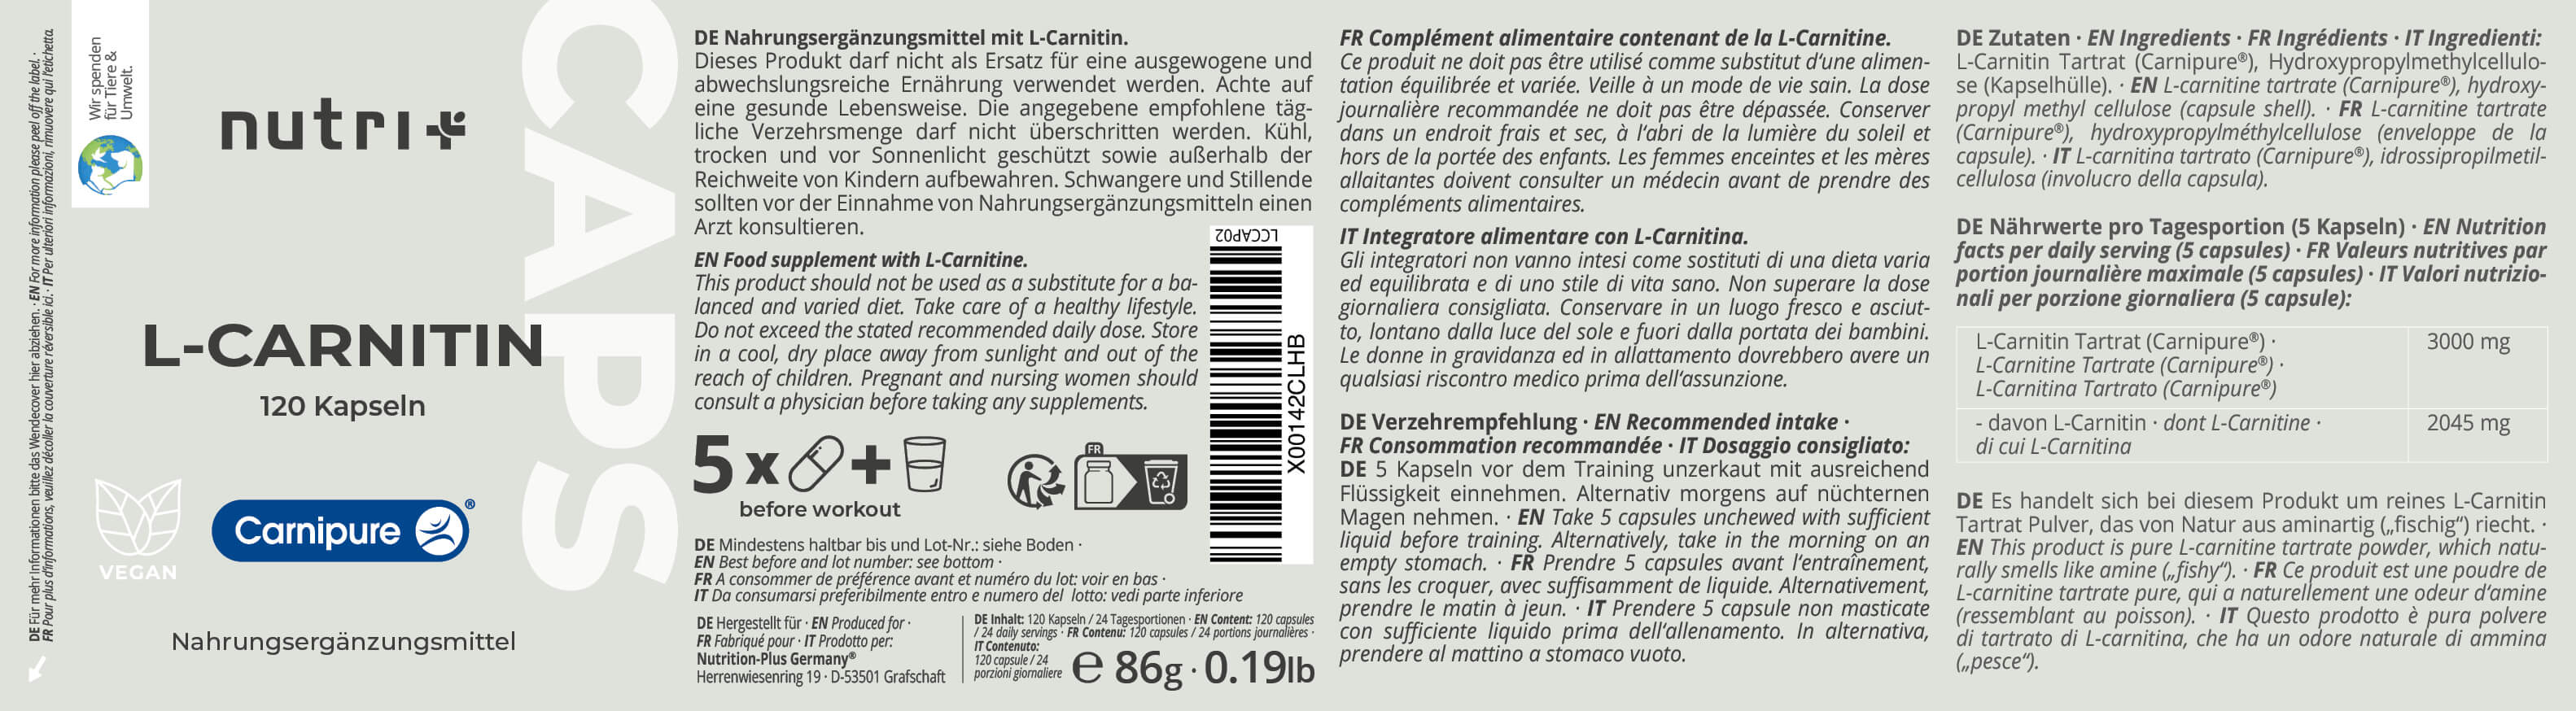 L-Carnitine Capsules (Carnipure®)